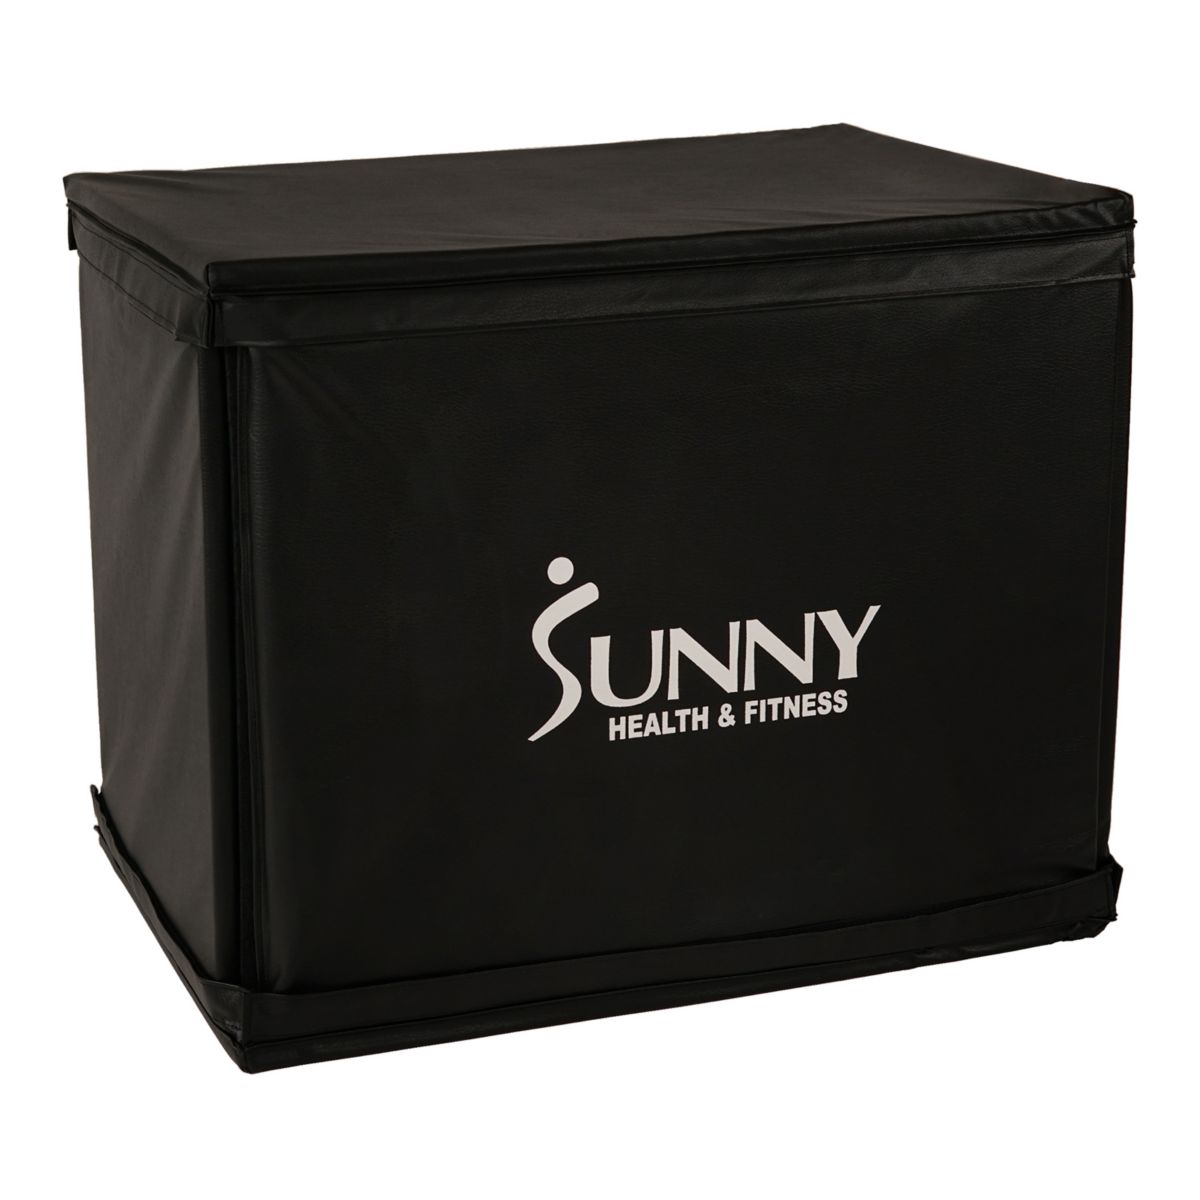 Деревянная пластиковая коробка Sunny Health & Fitness со съемной поролоновой крышкой Sunny Health & Fitness